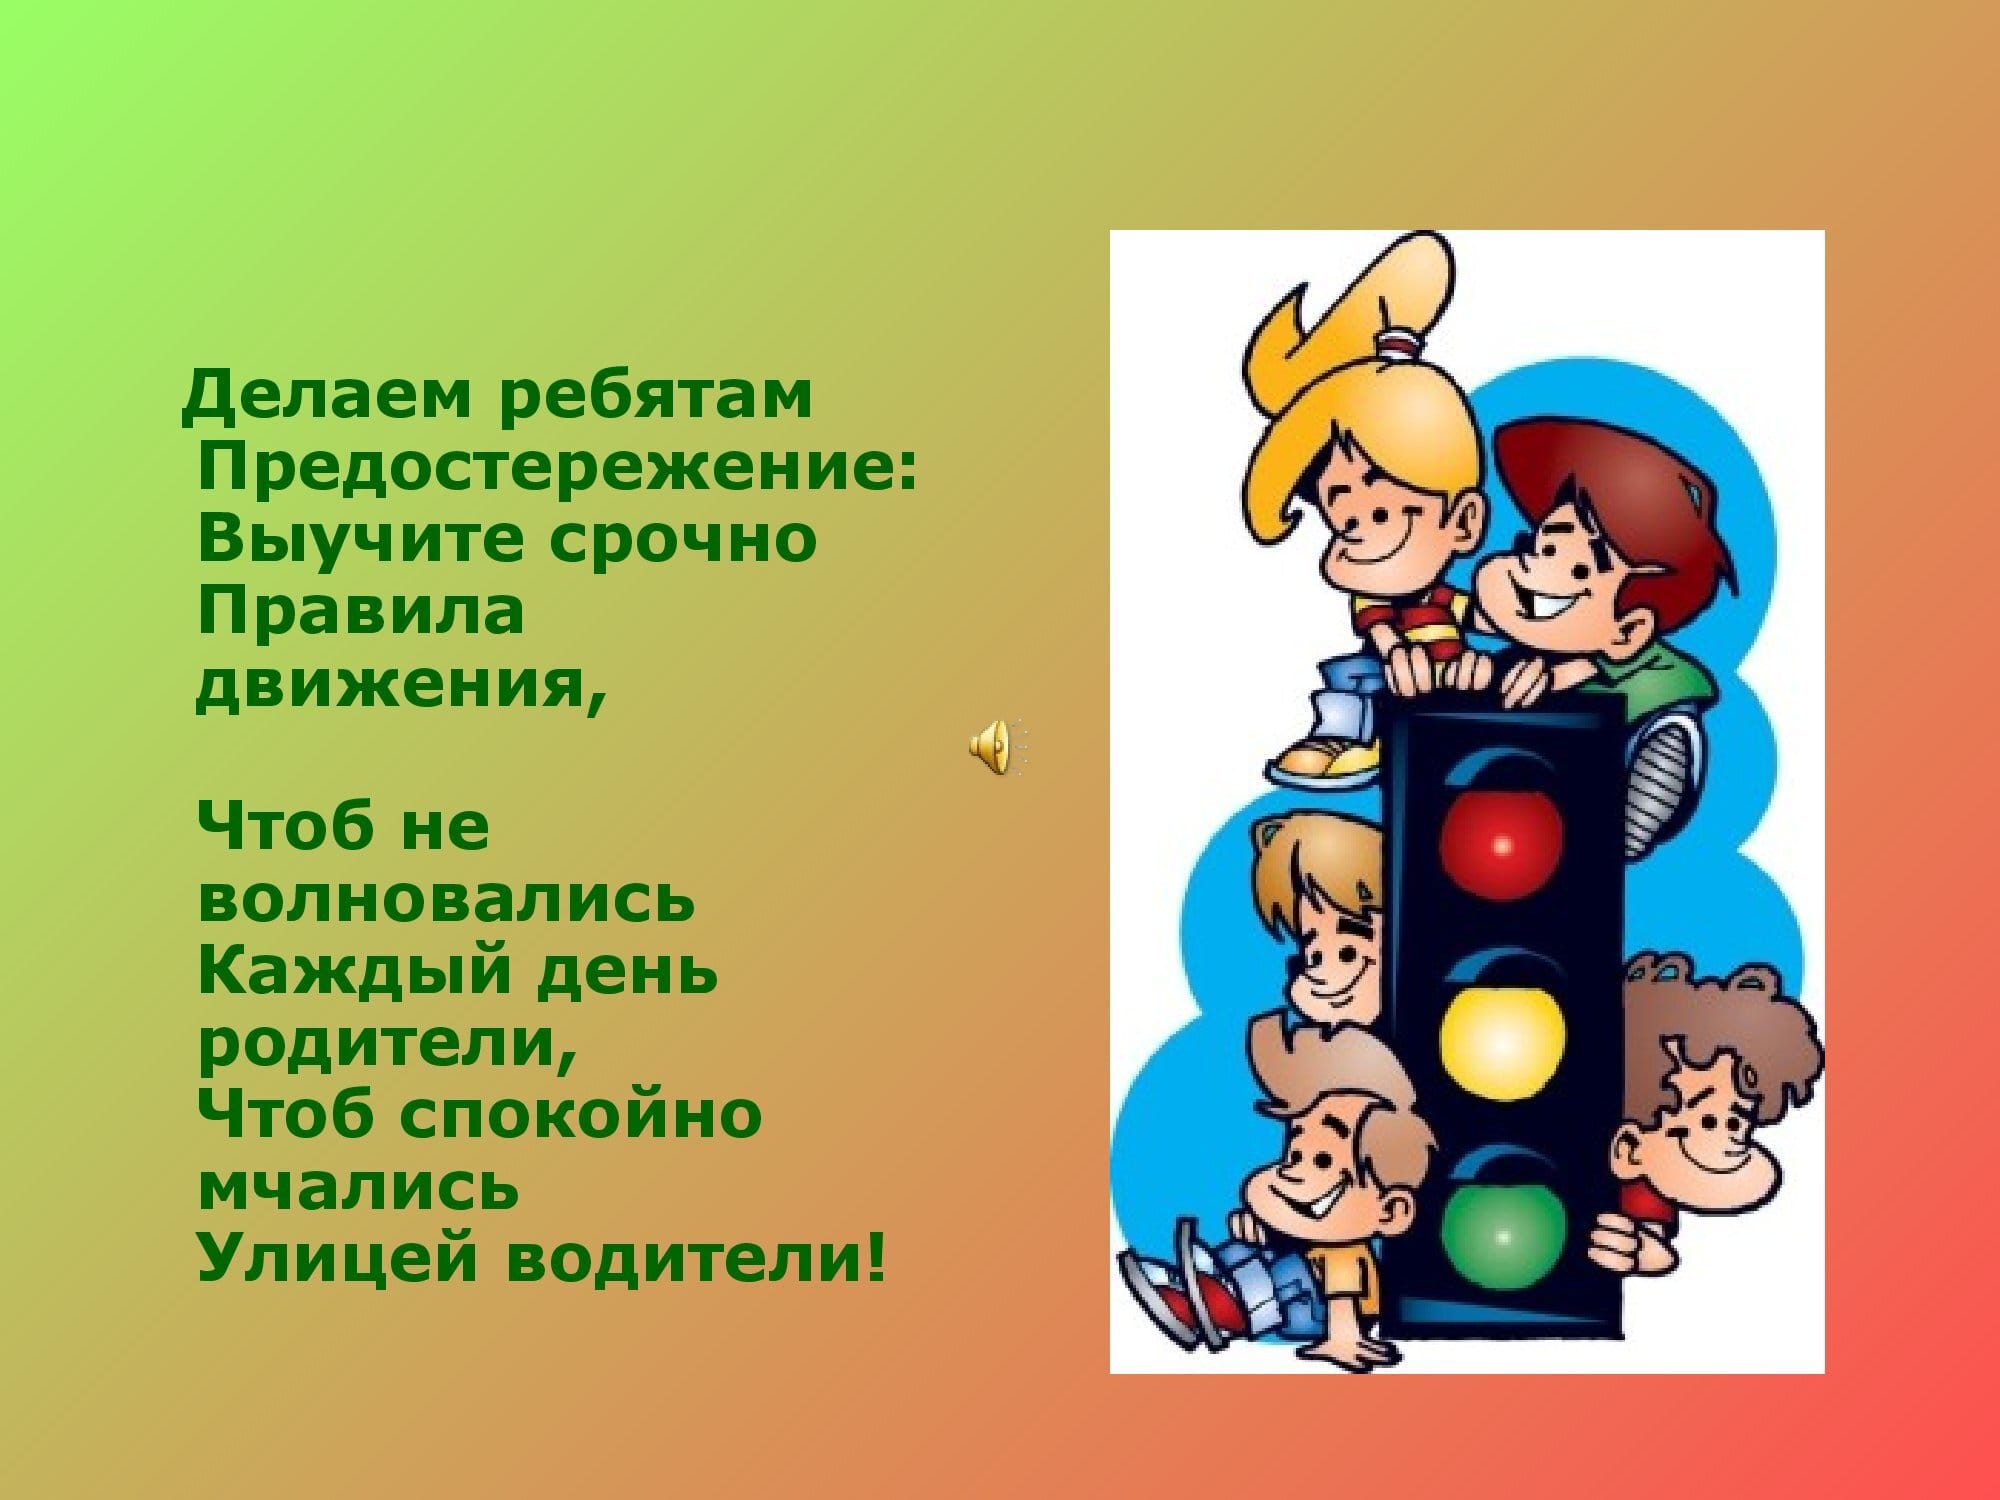 pravila_dorozhnogo_dvizheniya_15-03-2020_0000002